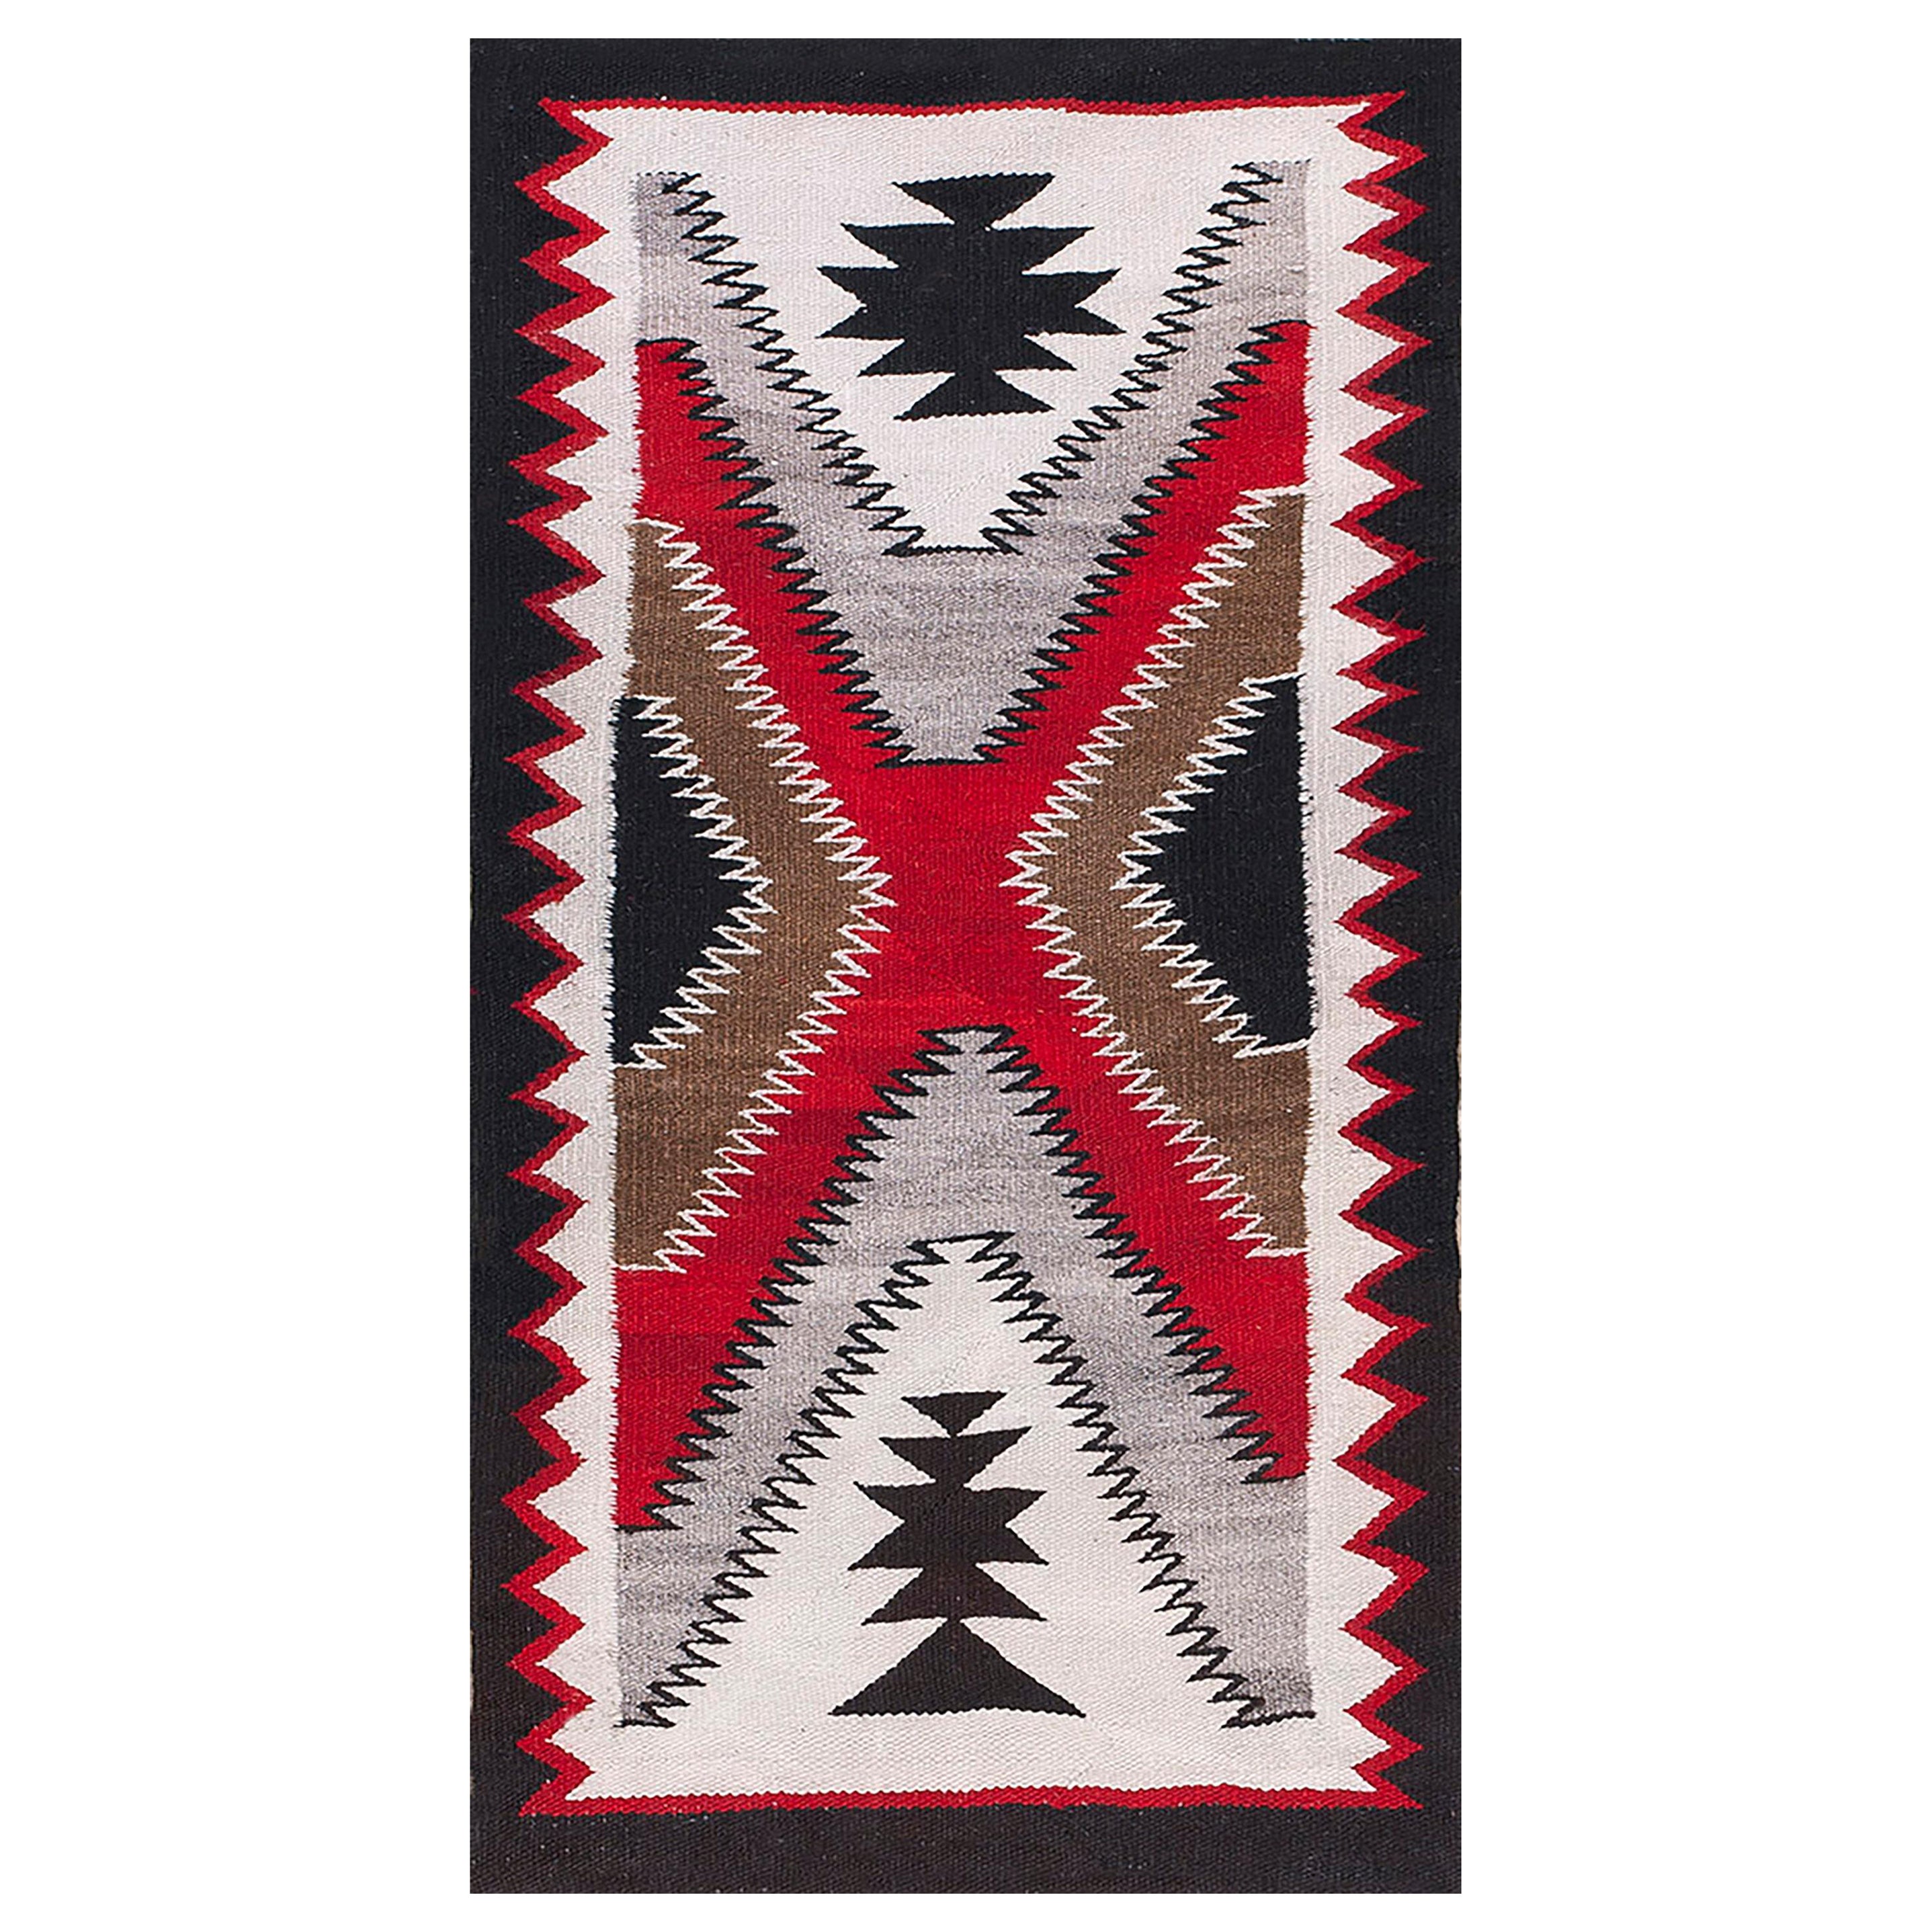 Amerikanischer Navajo-Teppich des frühen 20. Jahrhunderts ( 2'2" x 4'3" - 66 x 130)